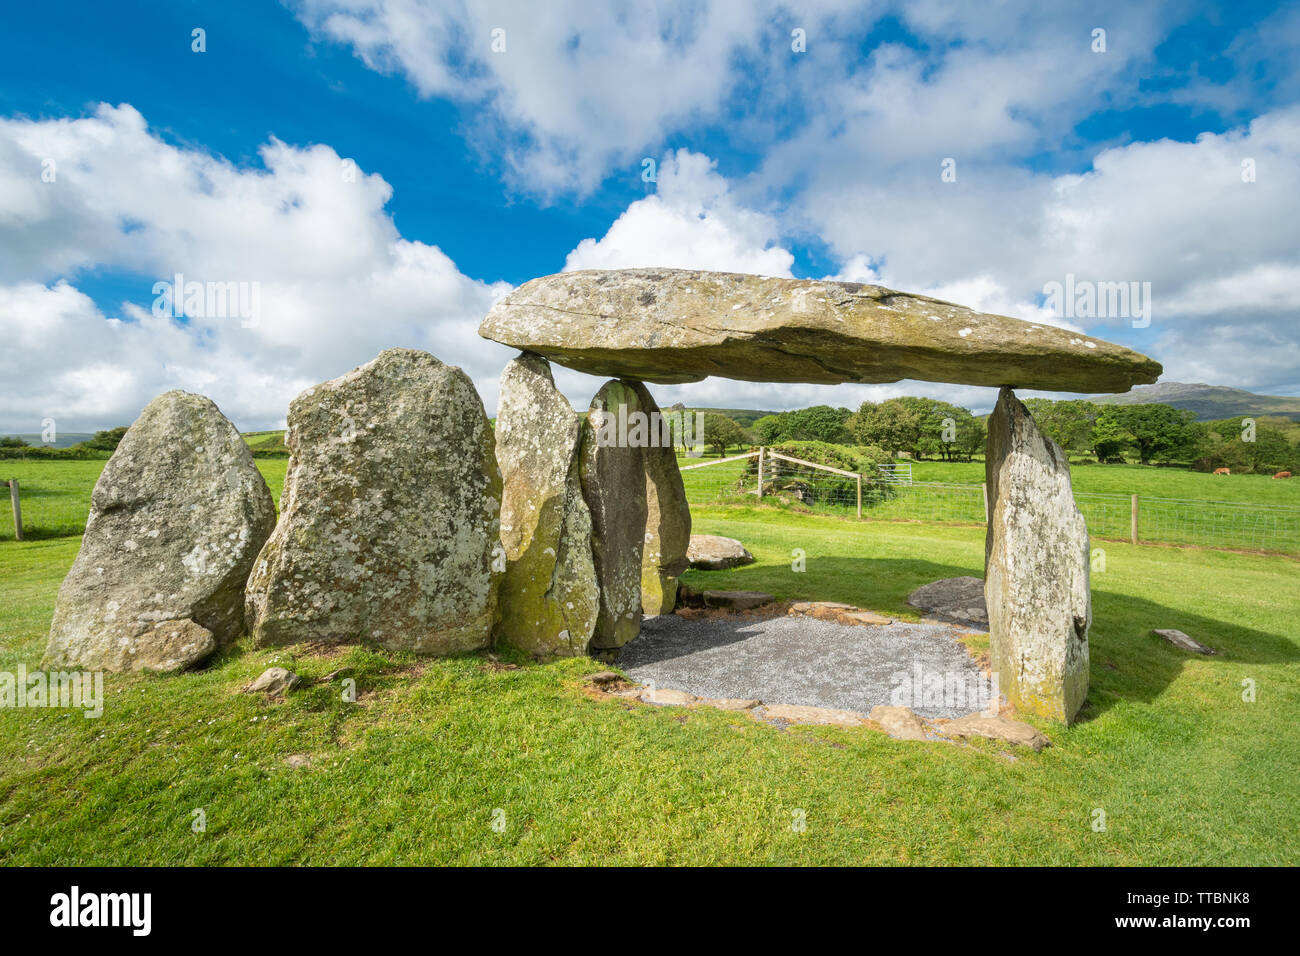 Pentre Ifan chambre funéraire néolithique ou dolmen (une grande pierre plate sur le dessus de plusieurs pierres debout) à Pembrokeshire, Pays de Galles, Royaume-Uni Banque D'Images